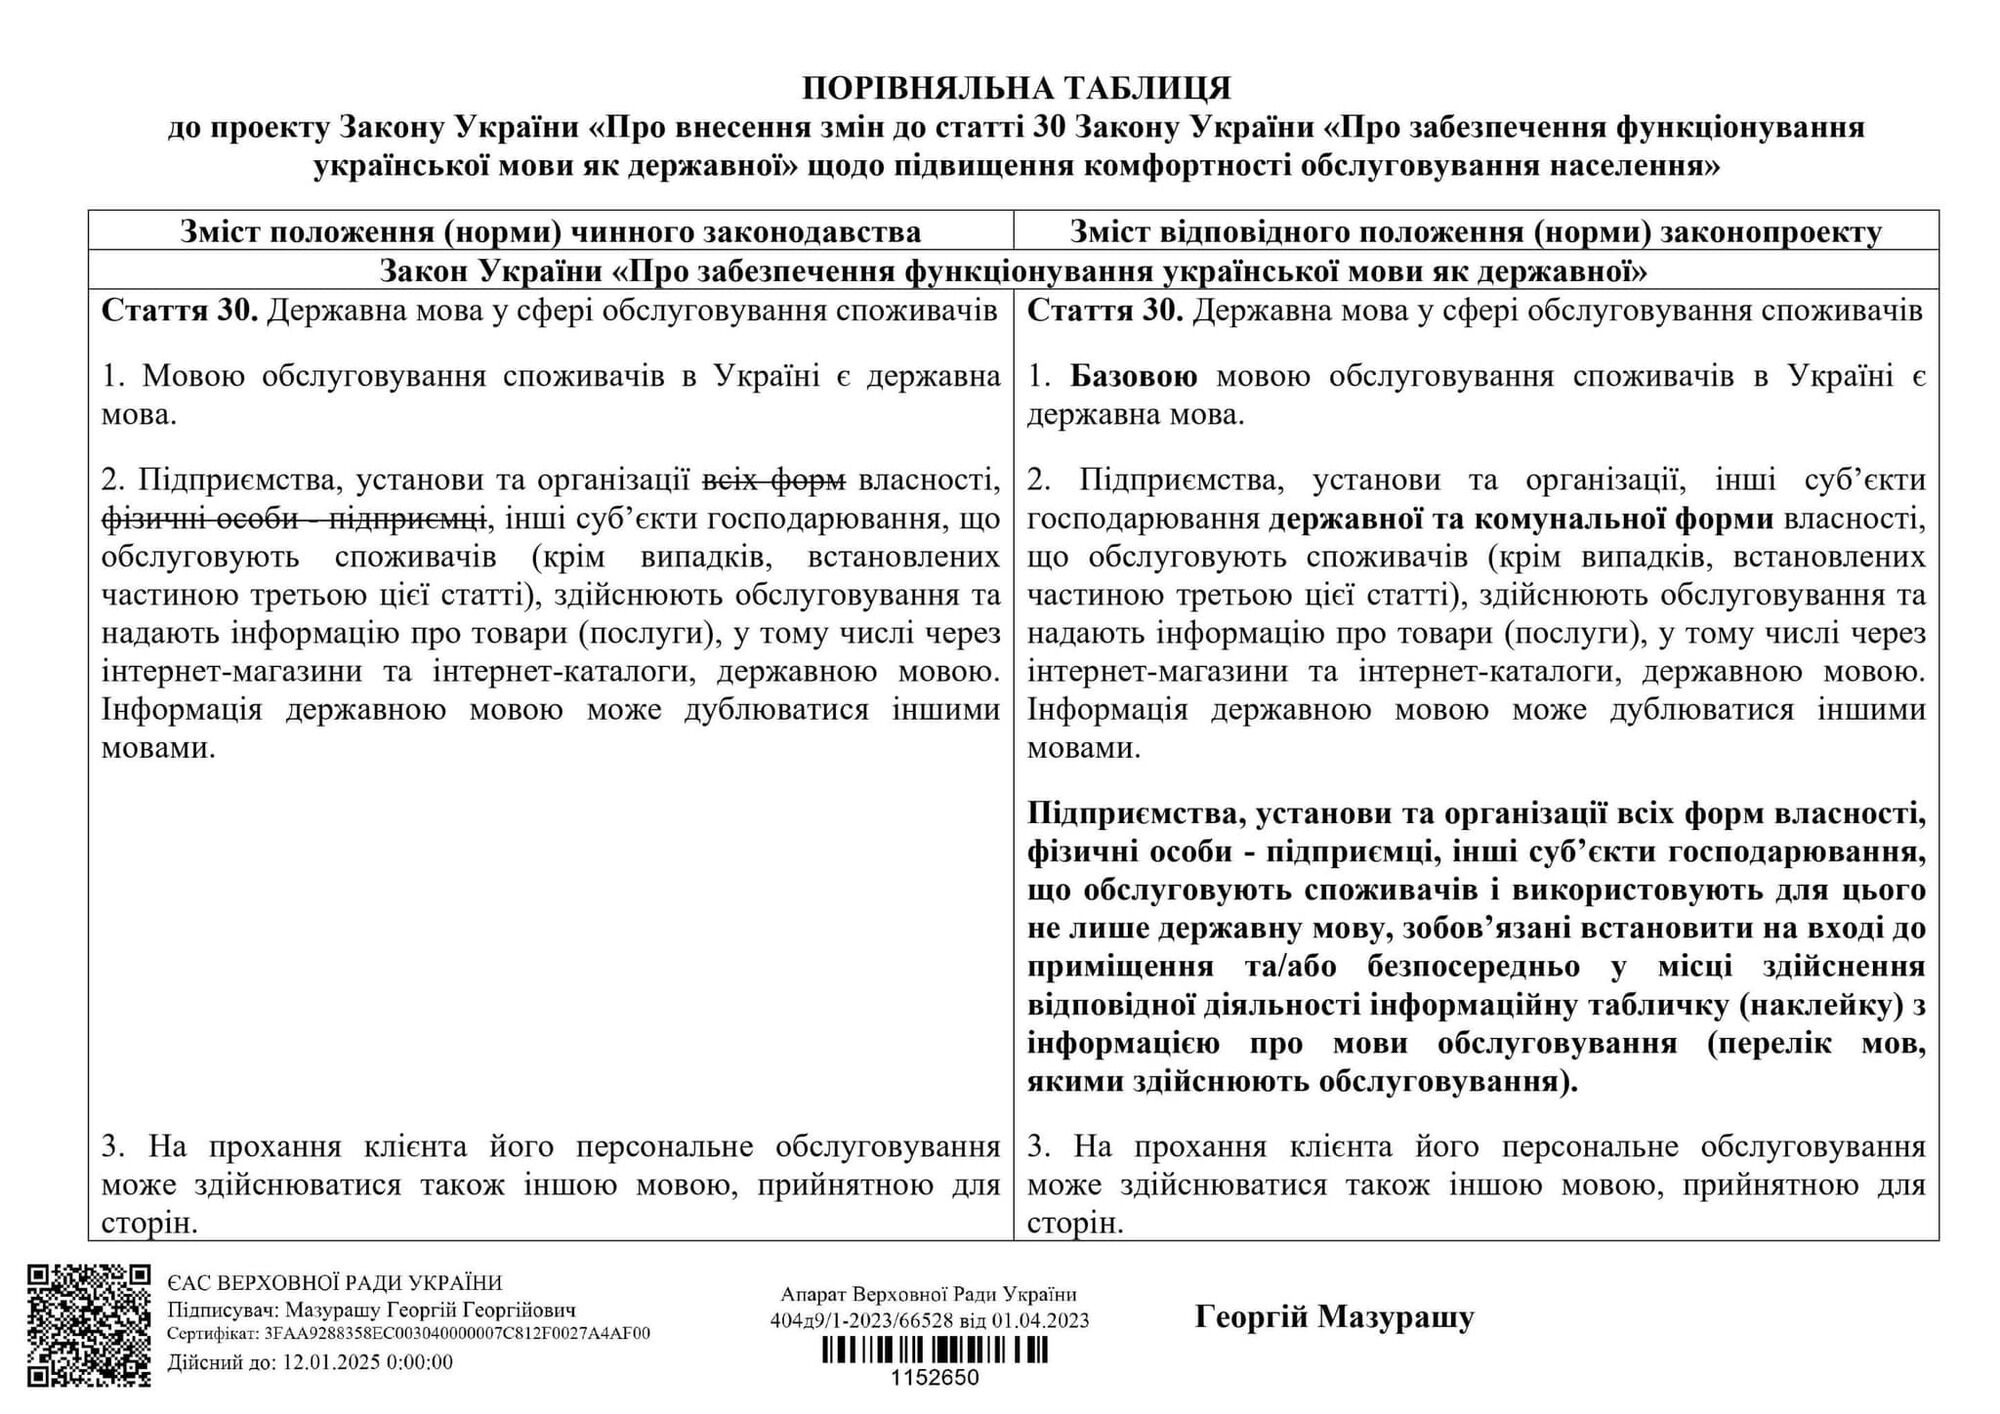 Тюрьма за критику власти и выезд за границу за "откуп": самые скандальные законопроекты нардепа Мазурашу, которые возмутили Украину